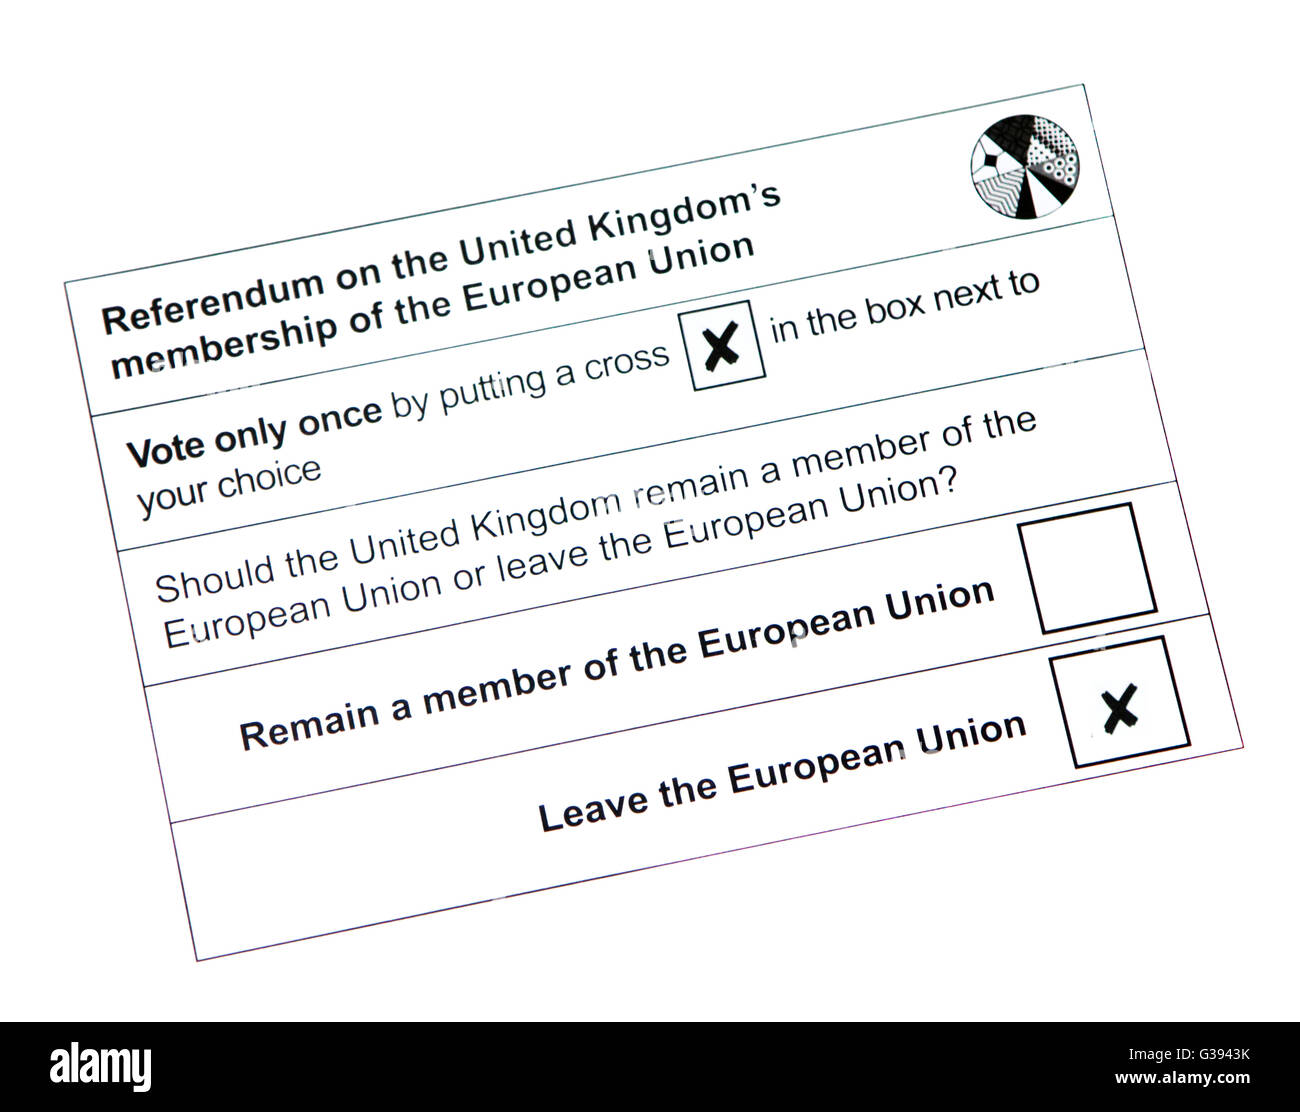 2016 ALSACE Union Européenne Référendum Vote postal Bulletin Banque D'Images